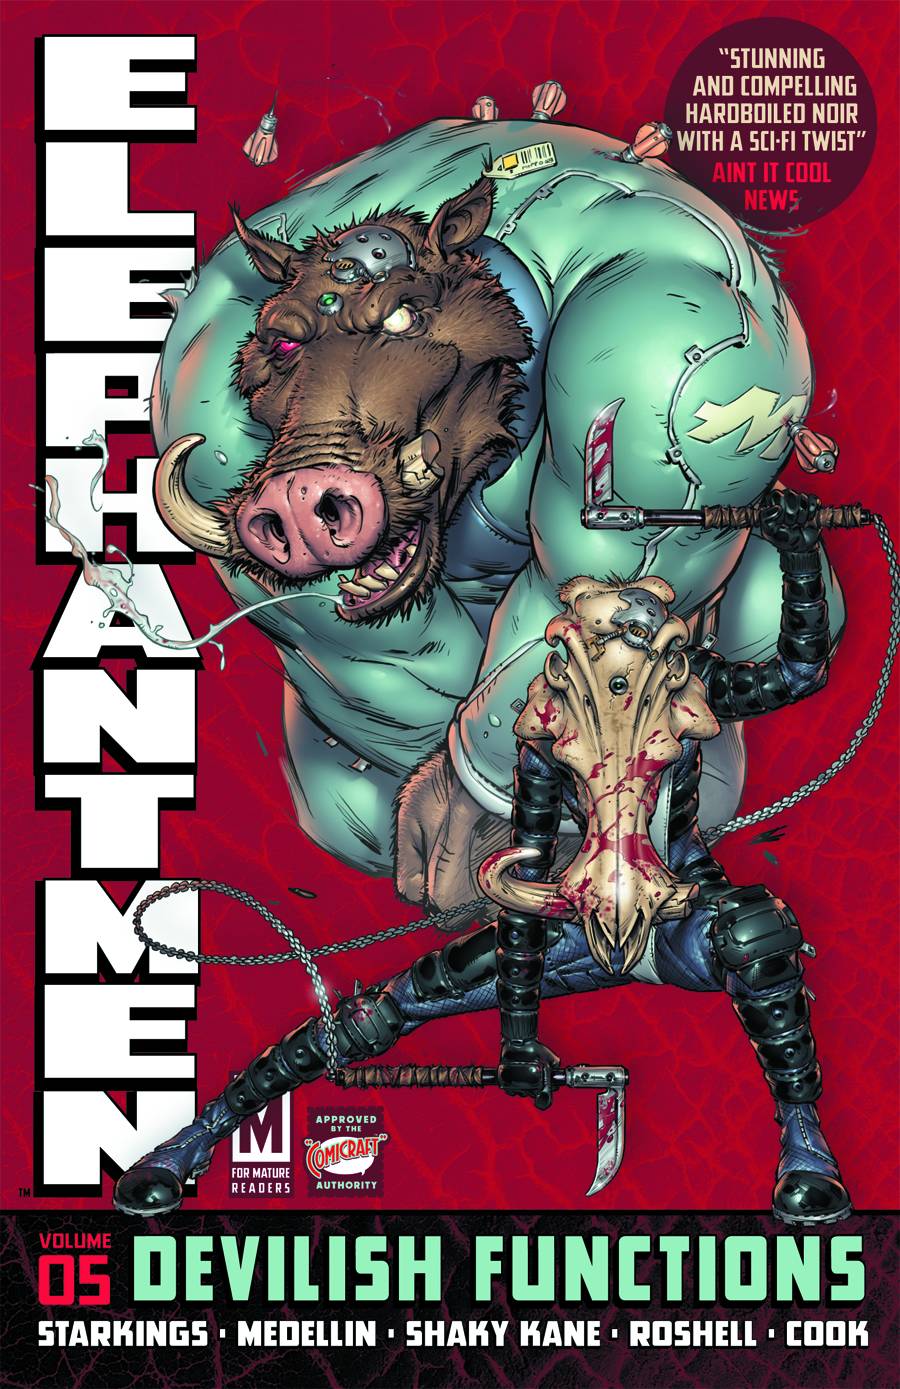 Elephantmen Graphic Novel Volume 5 Devilish Functions